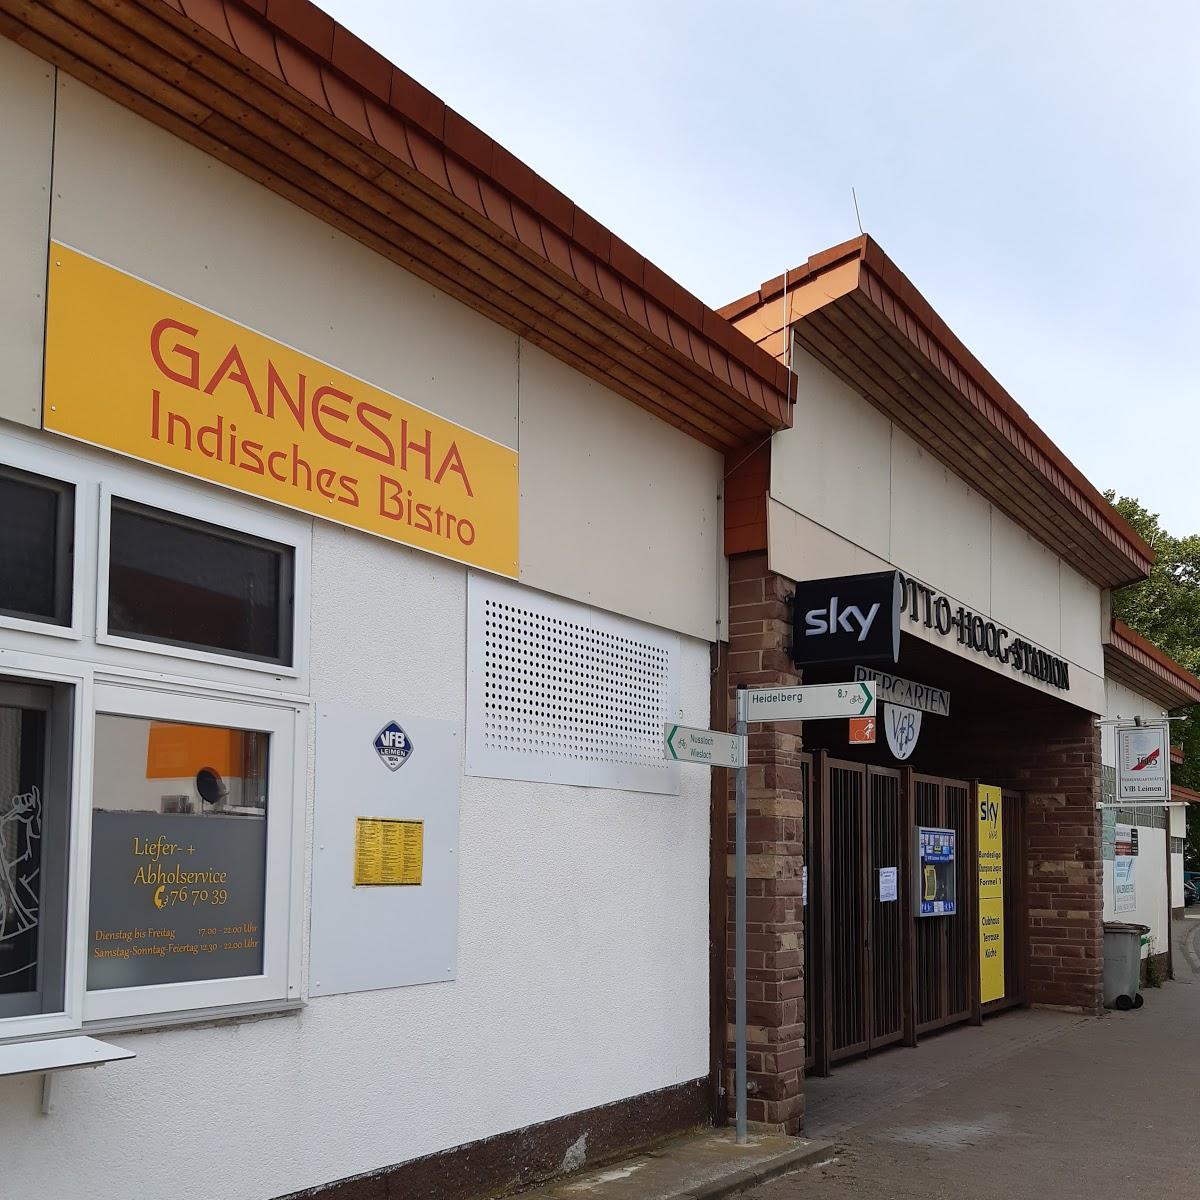 Restaurant "Ganesha indisches Bistro" in Leimen